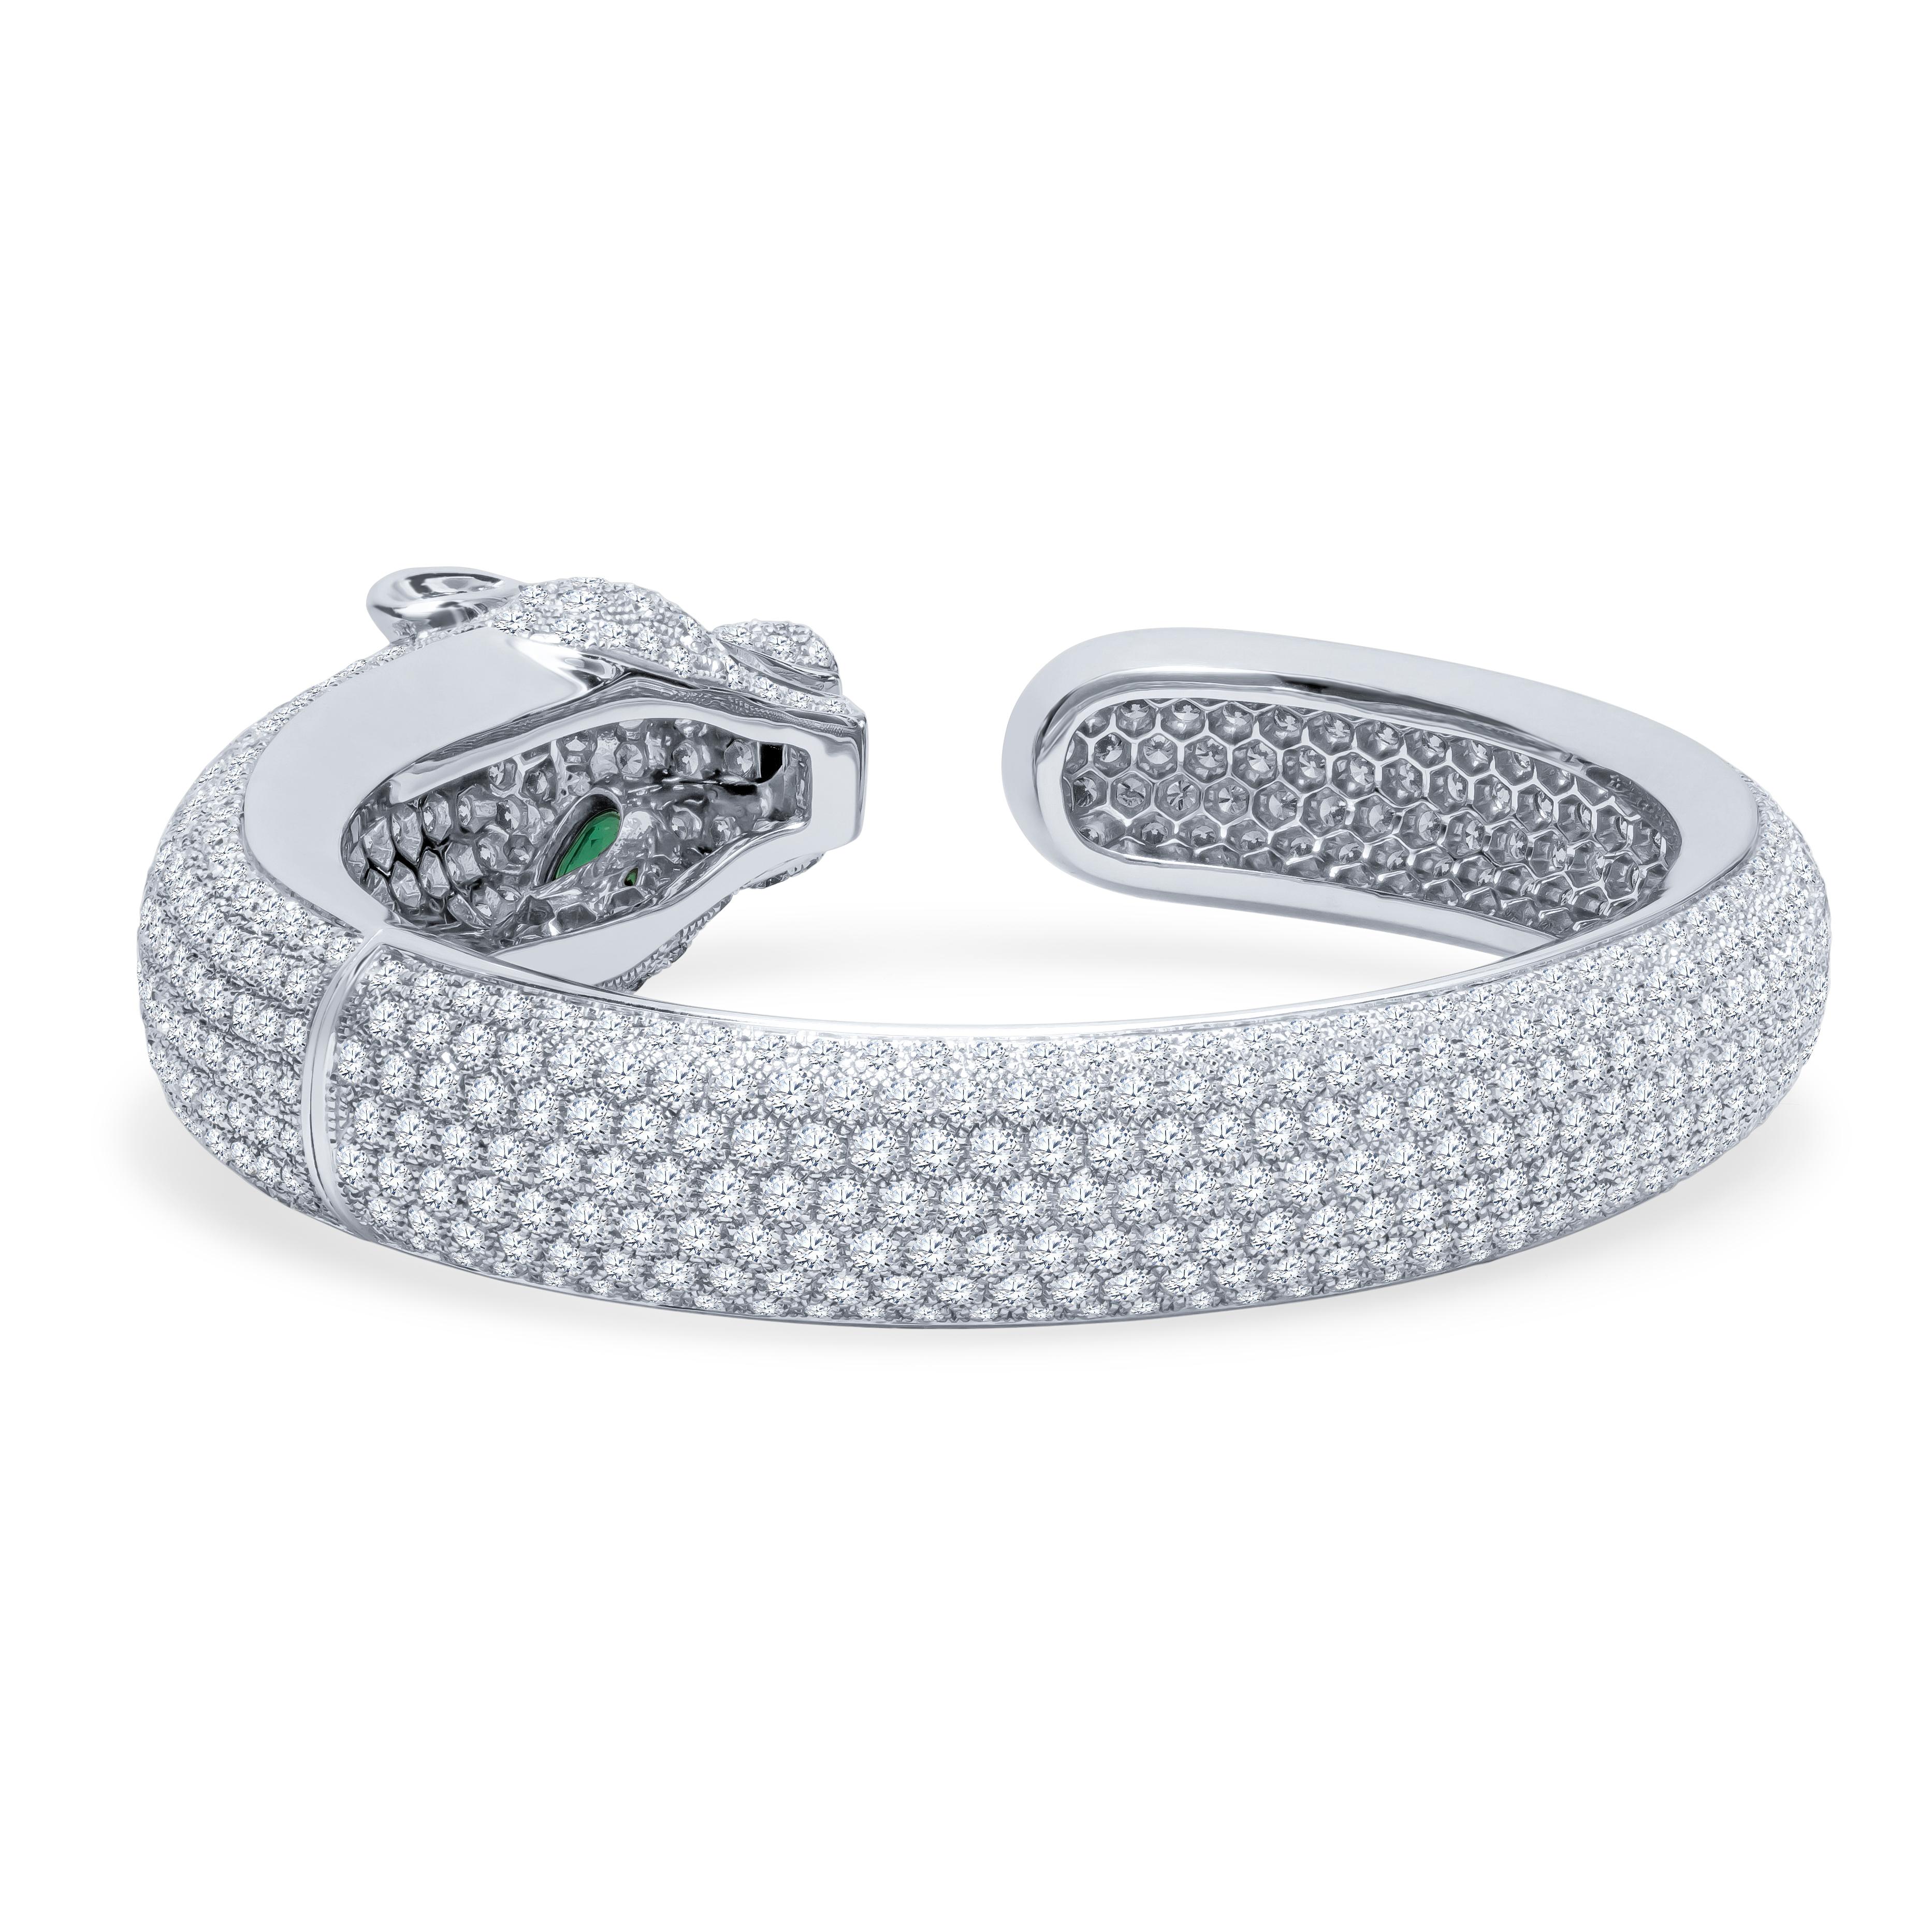 Cartier Panthre De Bracelet Pave Diamonds and Emeralds 4